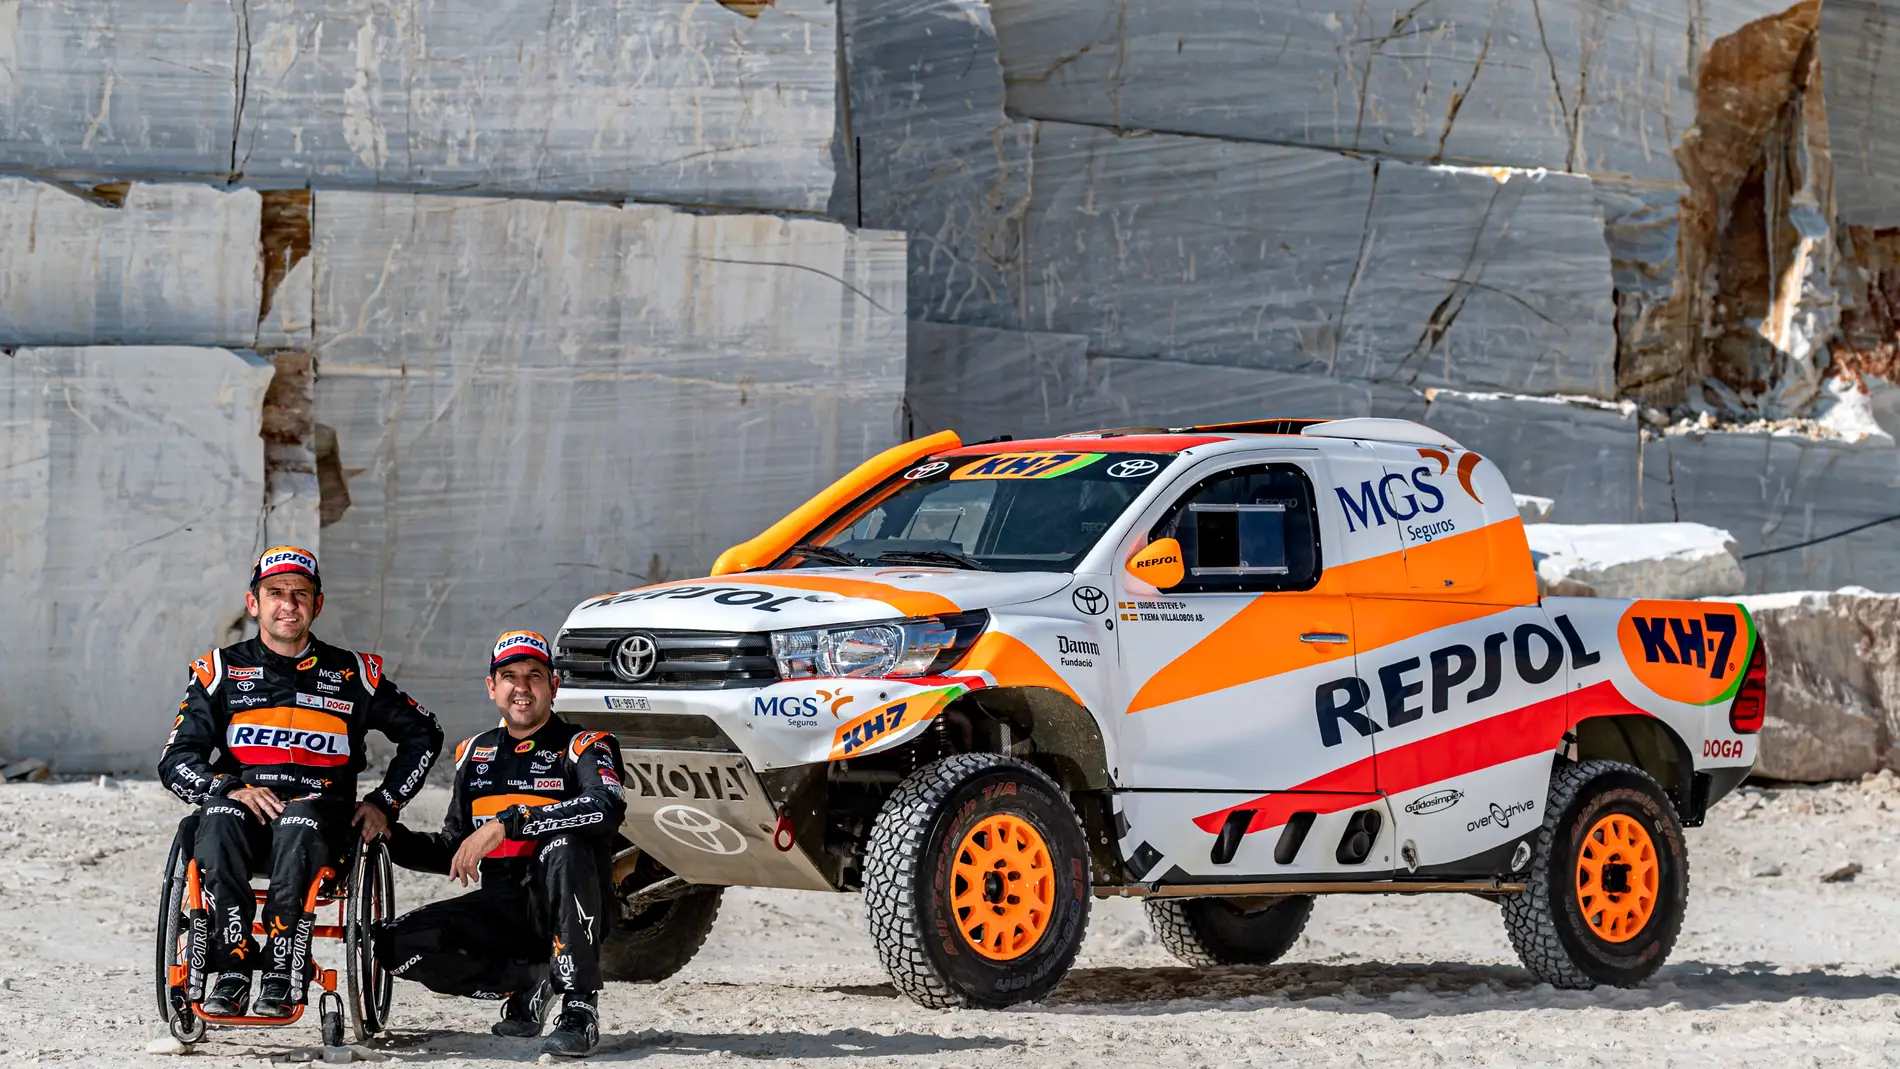 Esteve participará en su sexta edición del Rally Dakar en coches